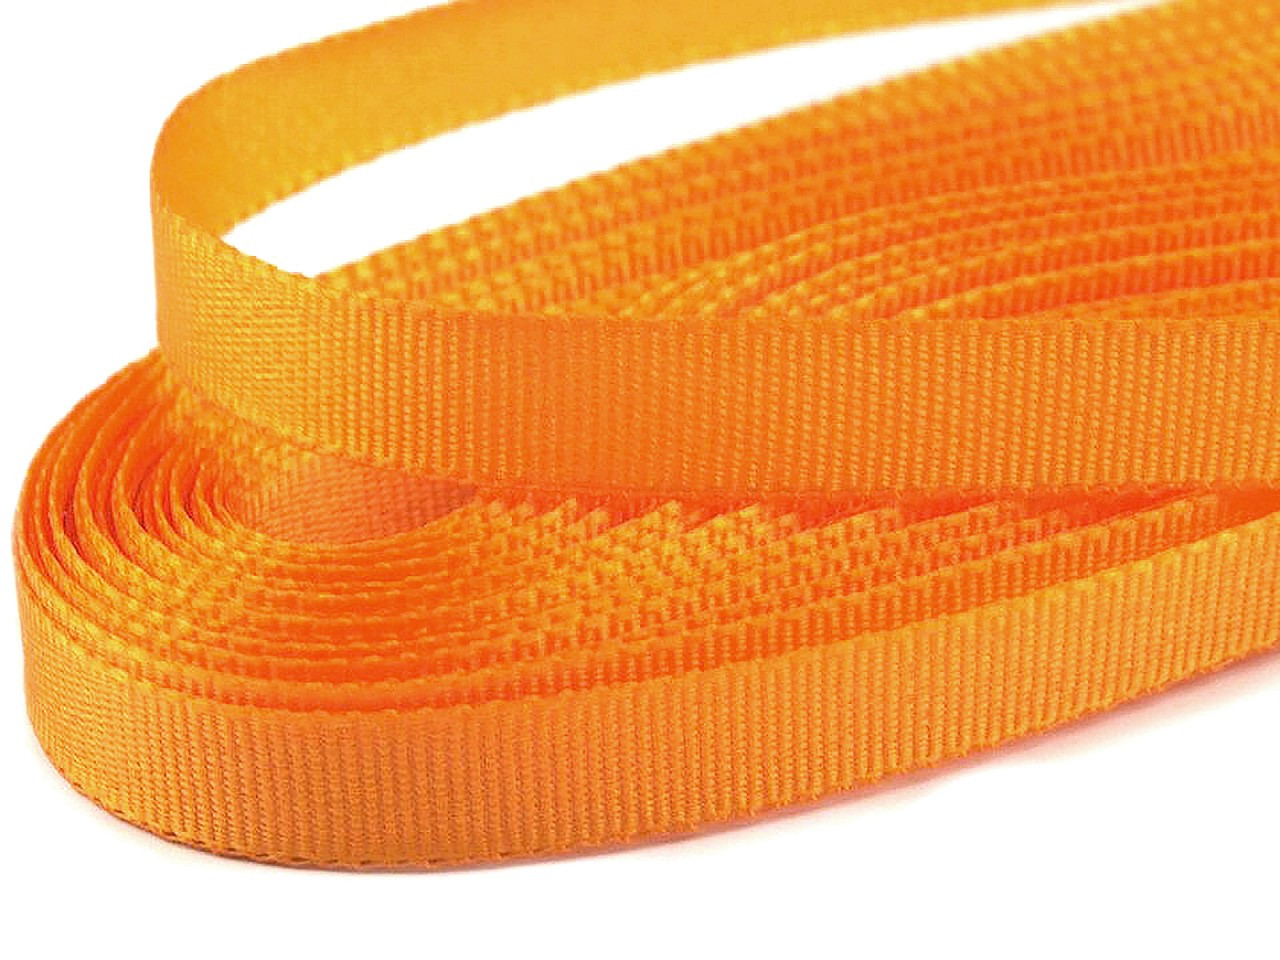 Stuha taftová šíře 9 mm, barva 211 oranžová sytá sv